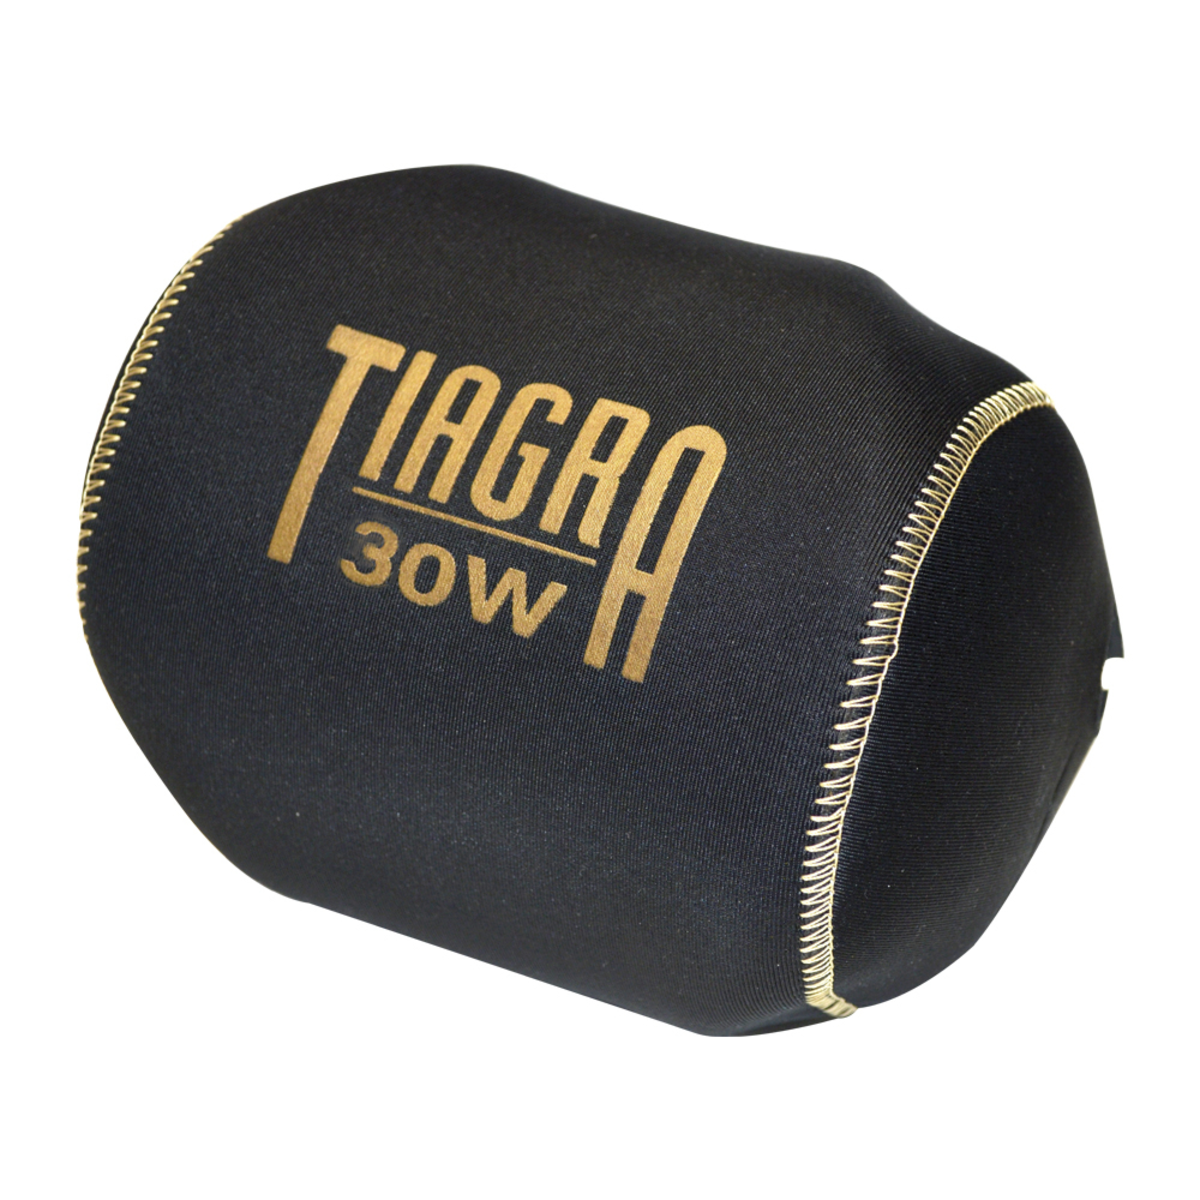 Buy Shimano Tiagra Neoprene Reel Cover 30W online at Marine-Deals